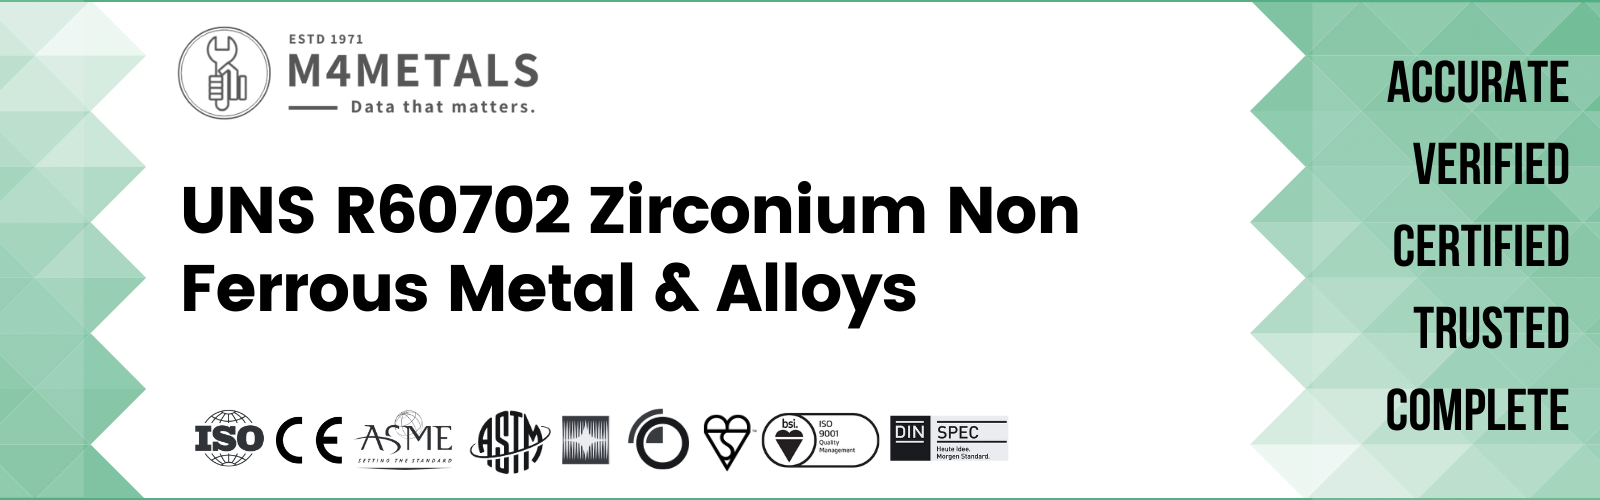 Zirconium UNS R60702